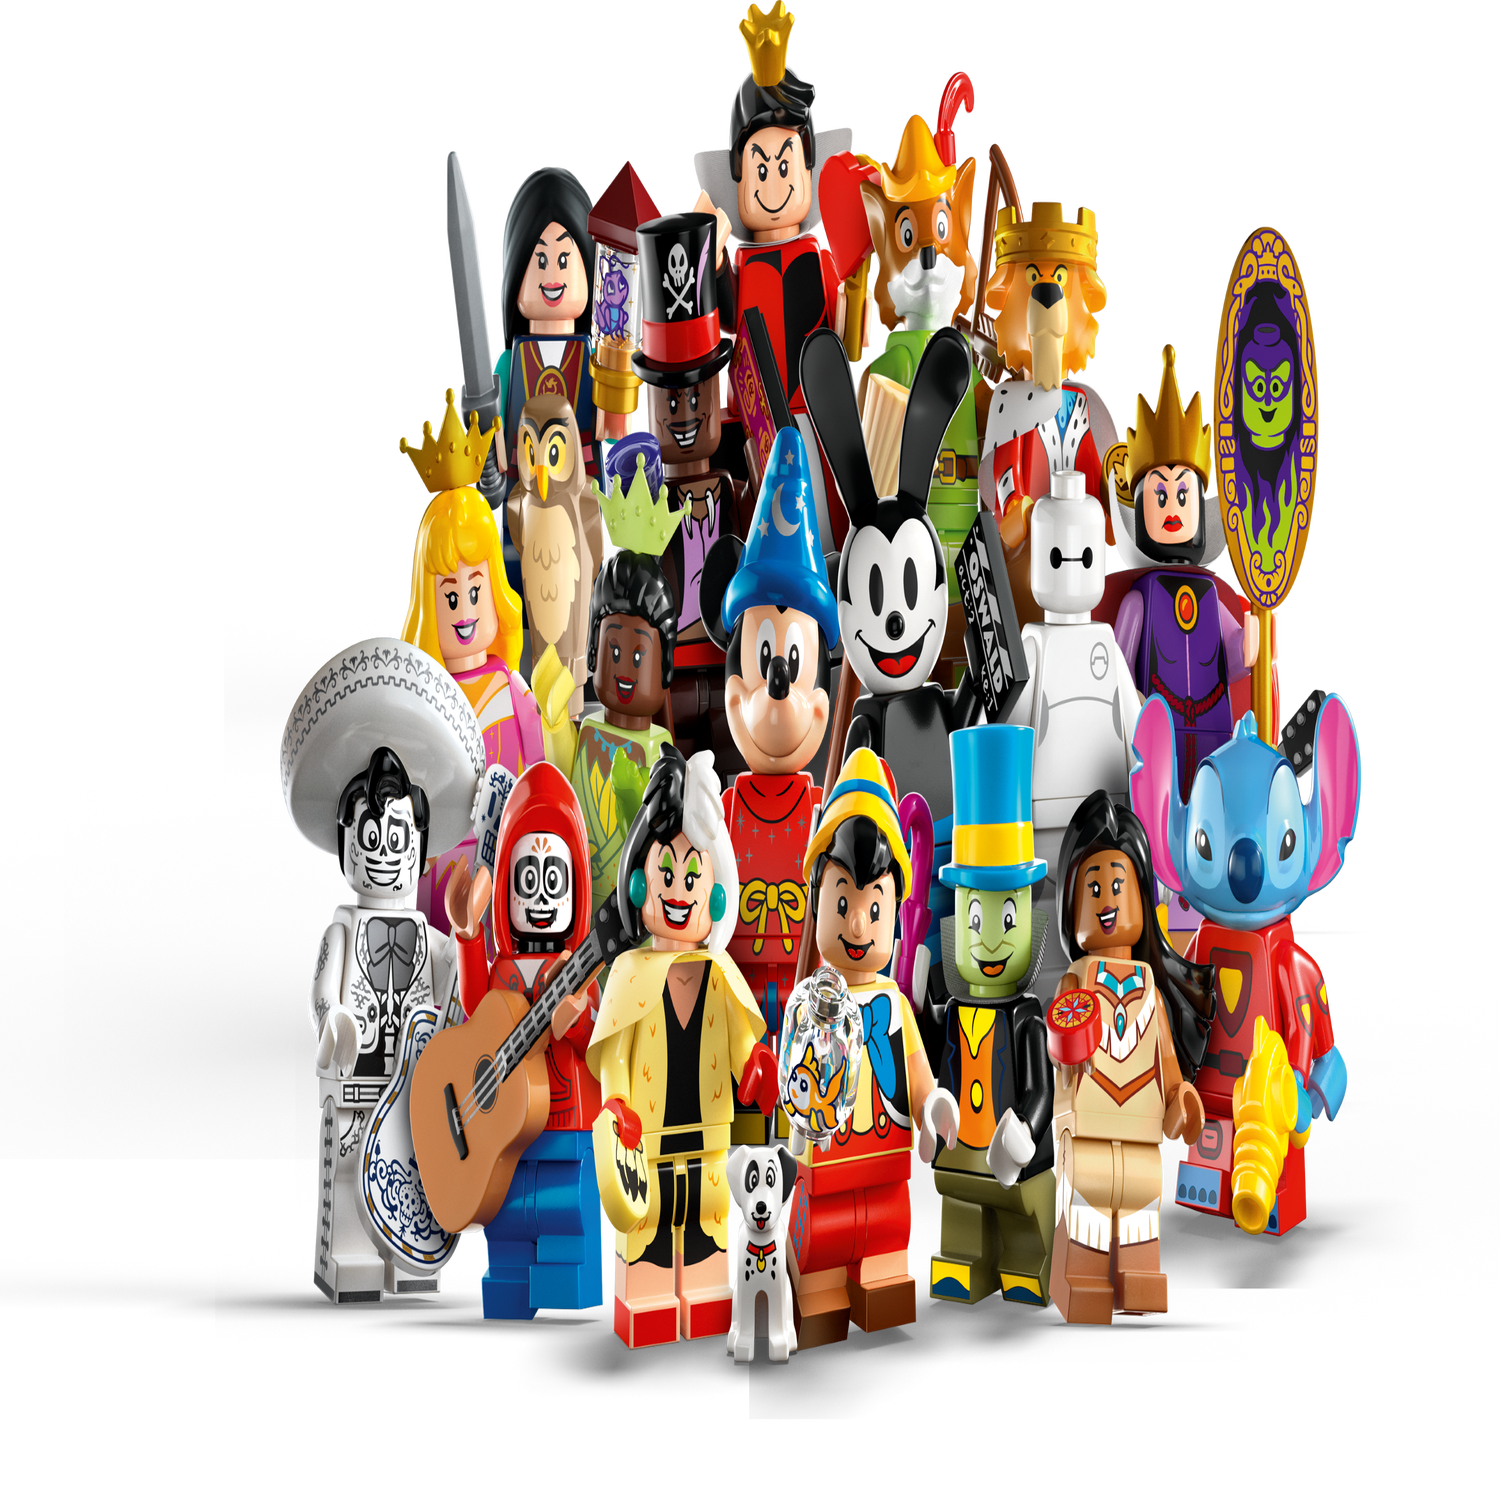 レゴ®ミニフィギュア ディズニー100 71038 | ミニフィギュア |レゴ®ストア公式オンラインショップJPで購入